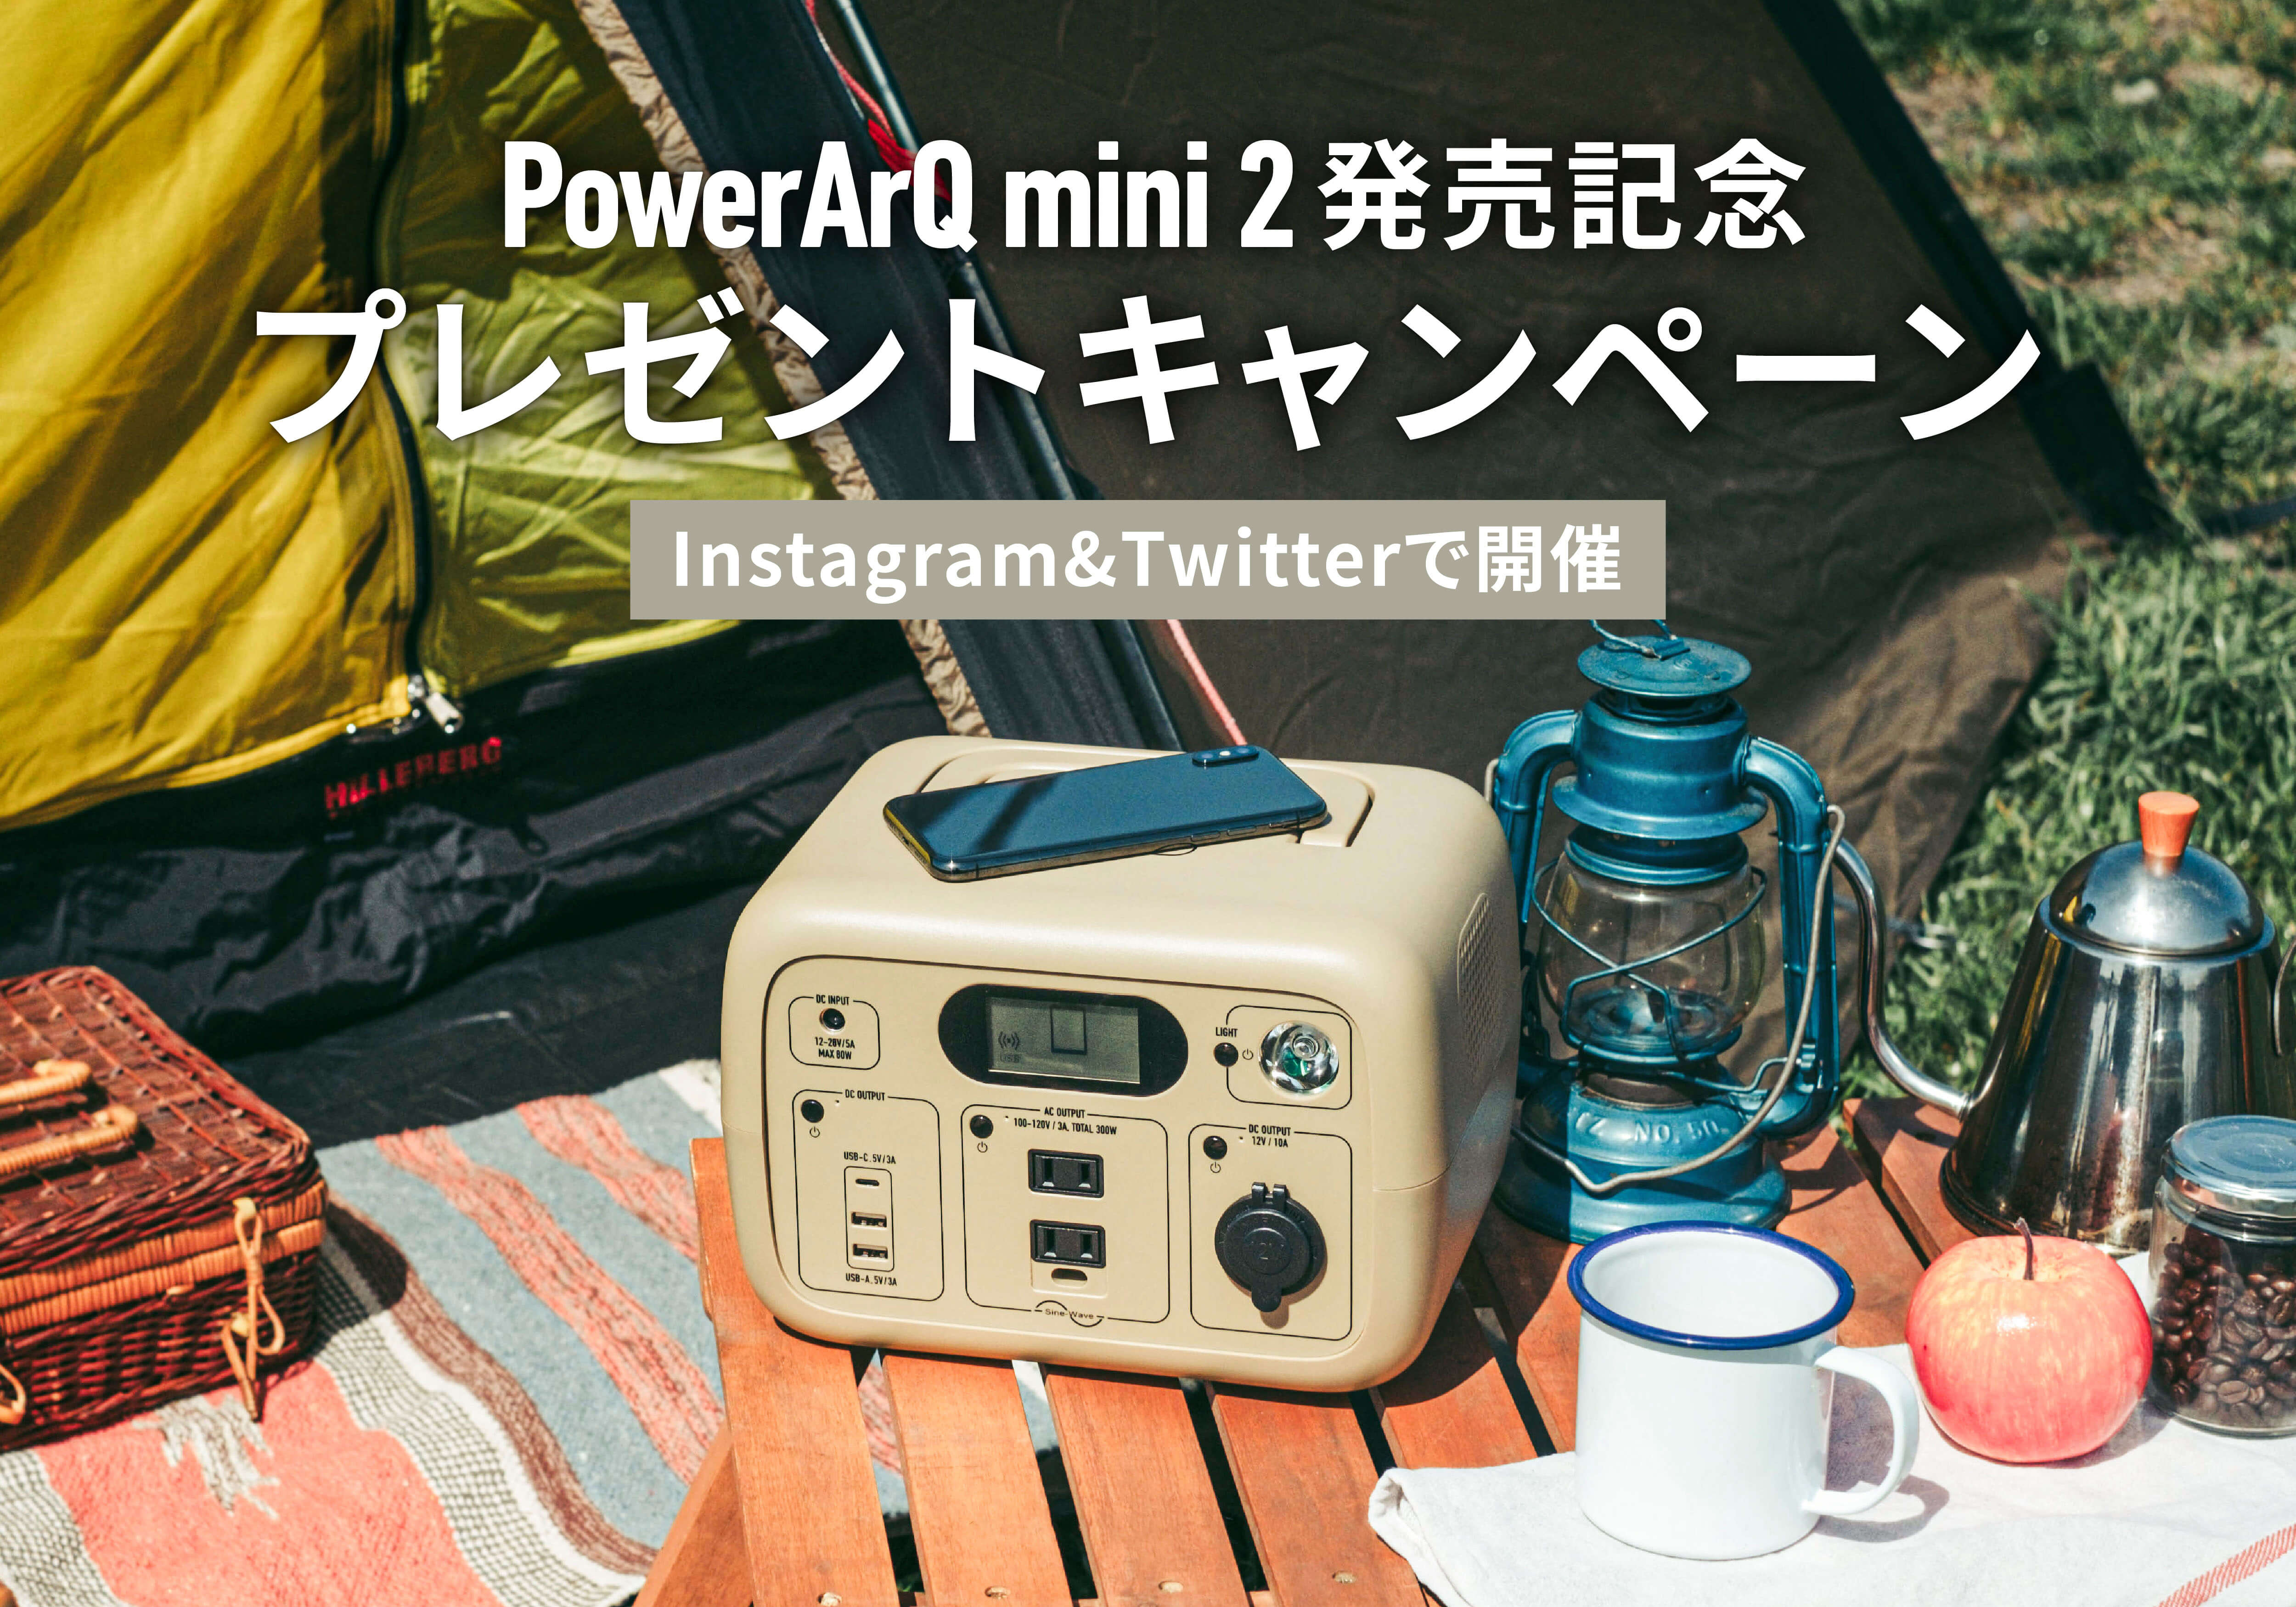 【新作ポータブル電源 PowerArQ mini2 が当たる！】5月26日より発売記念キャンペーンを開催